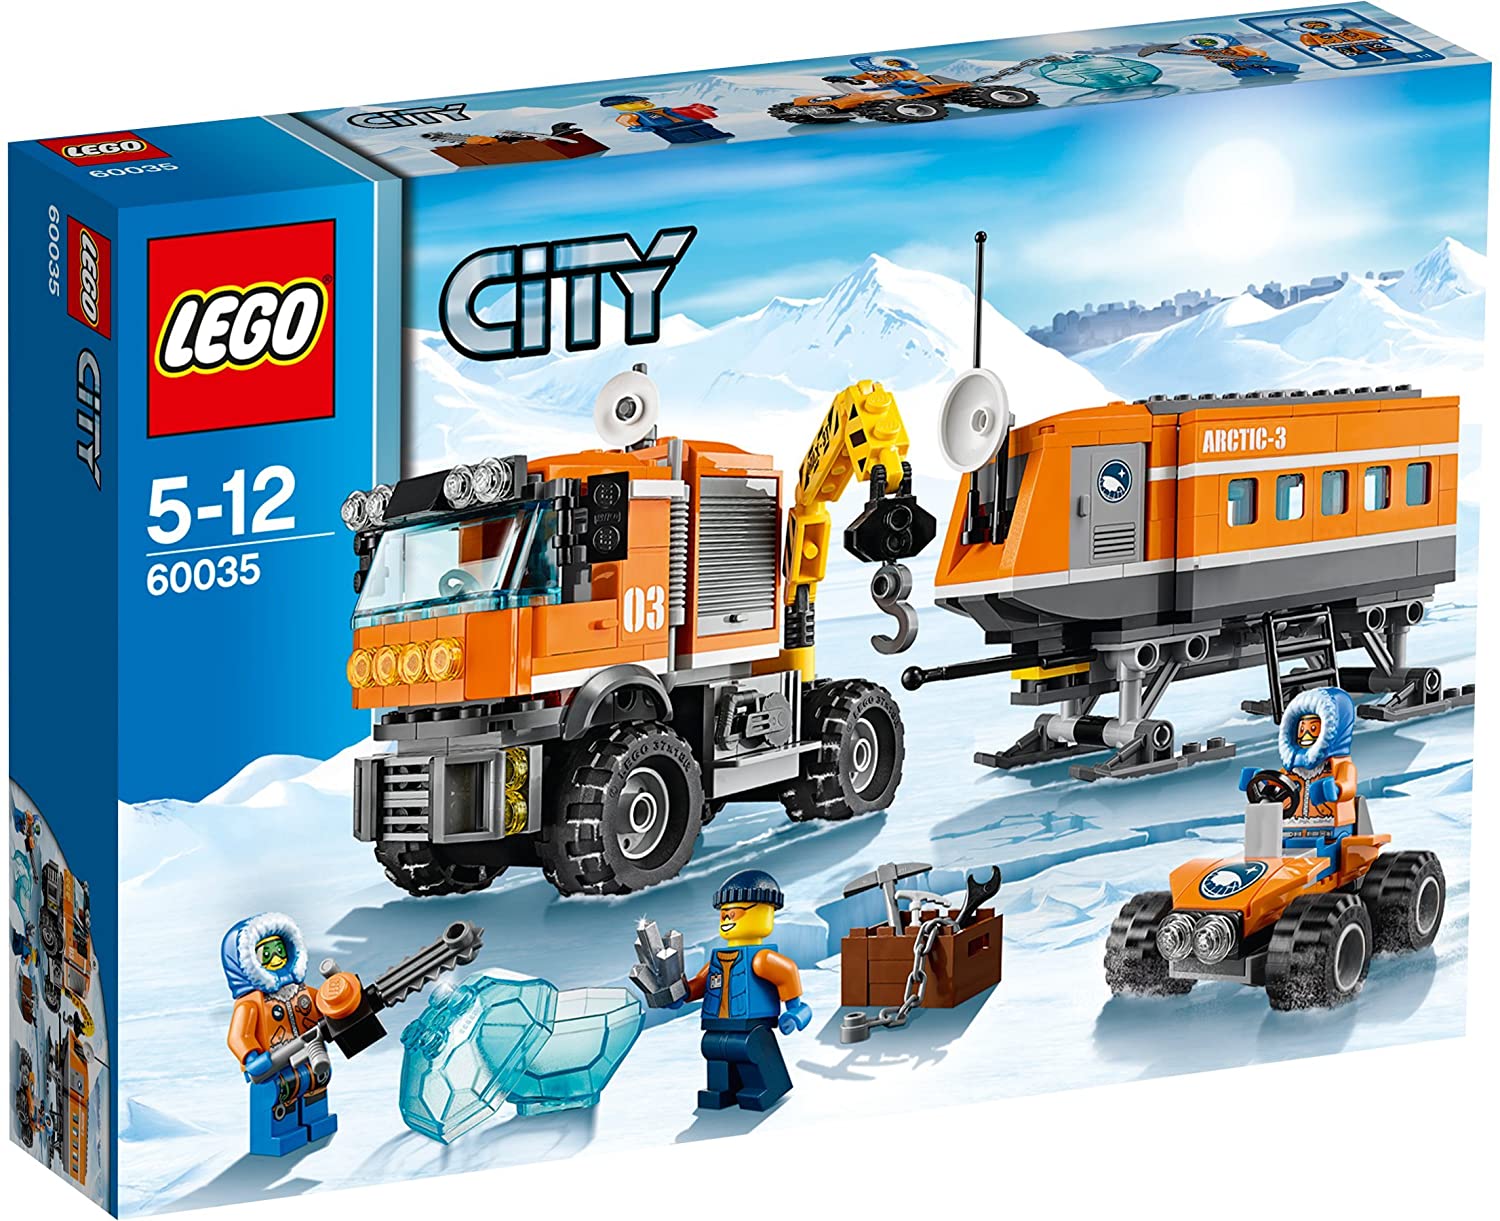 【折300+10%回饋】LEGO 樂高 拼插類玩具 City城市系列 北極考察站60035